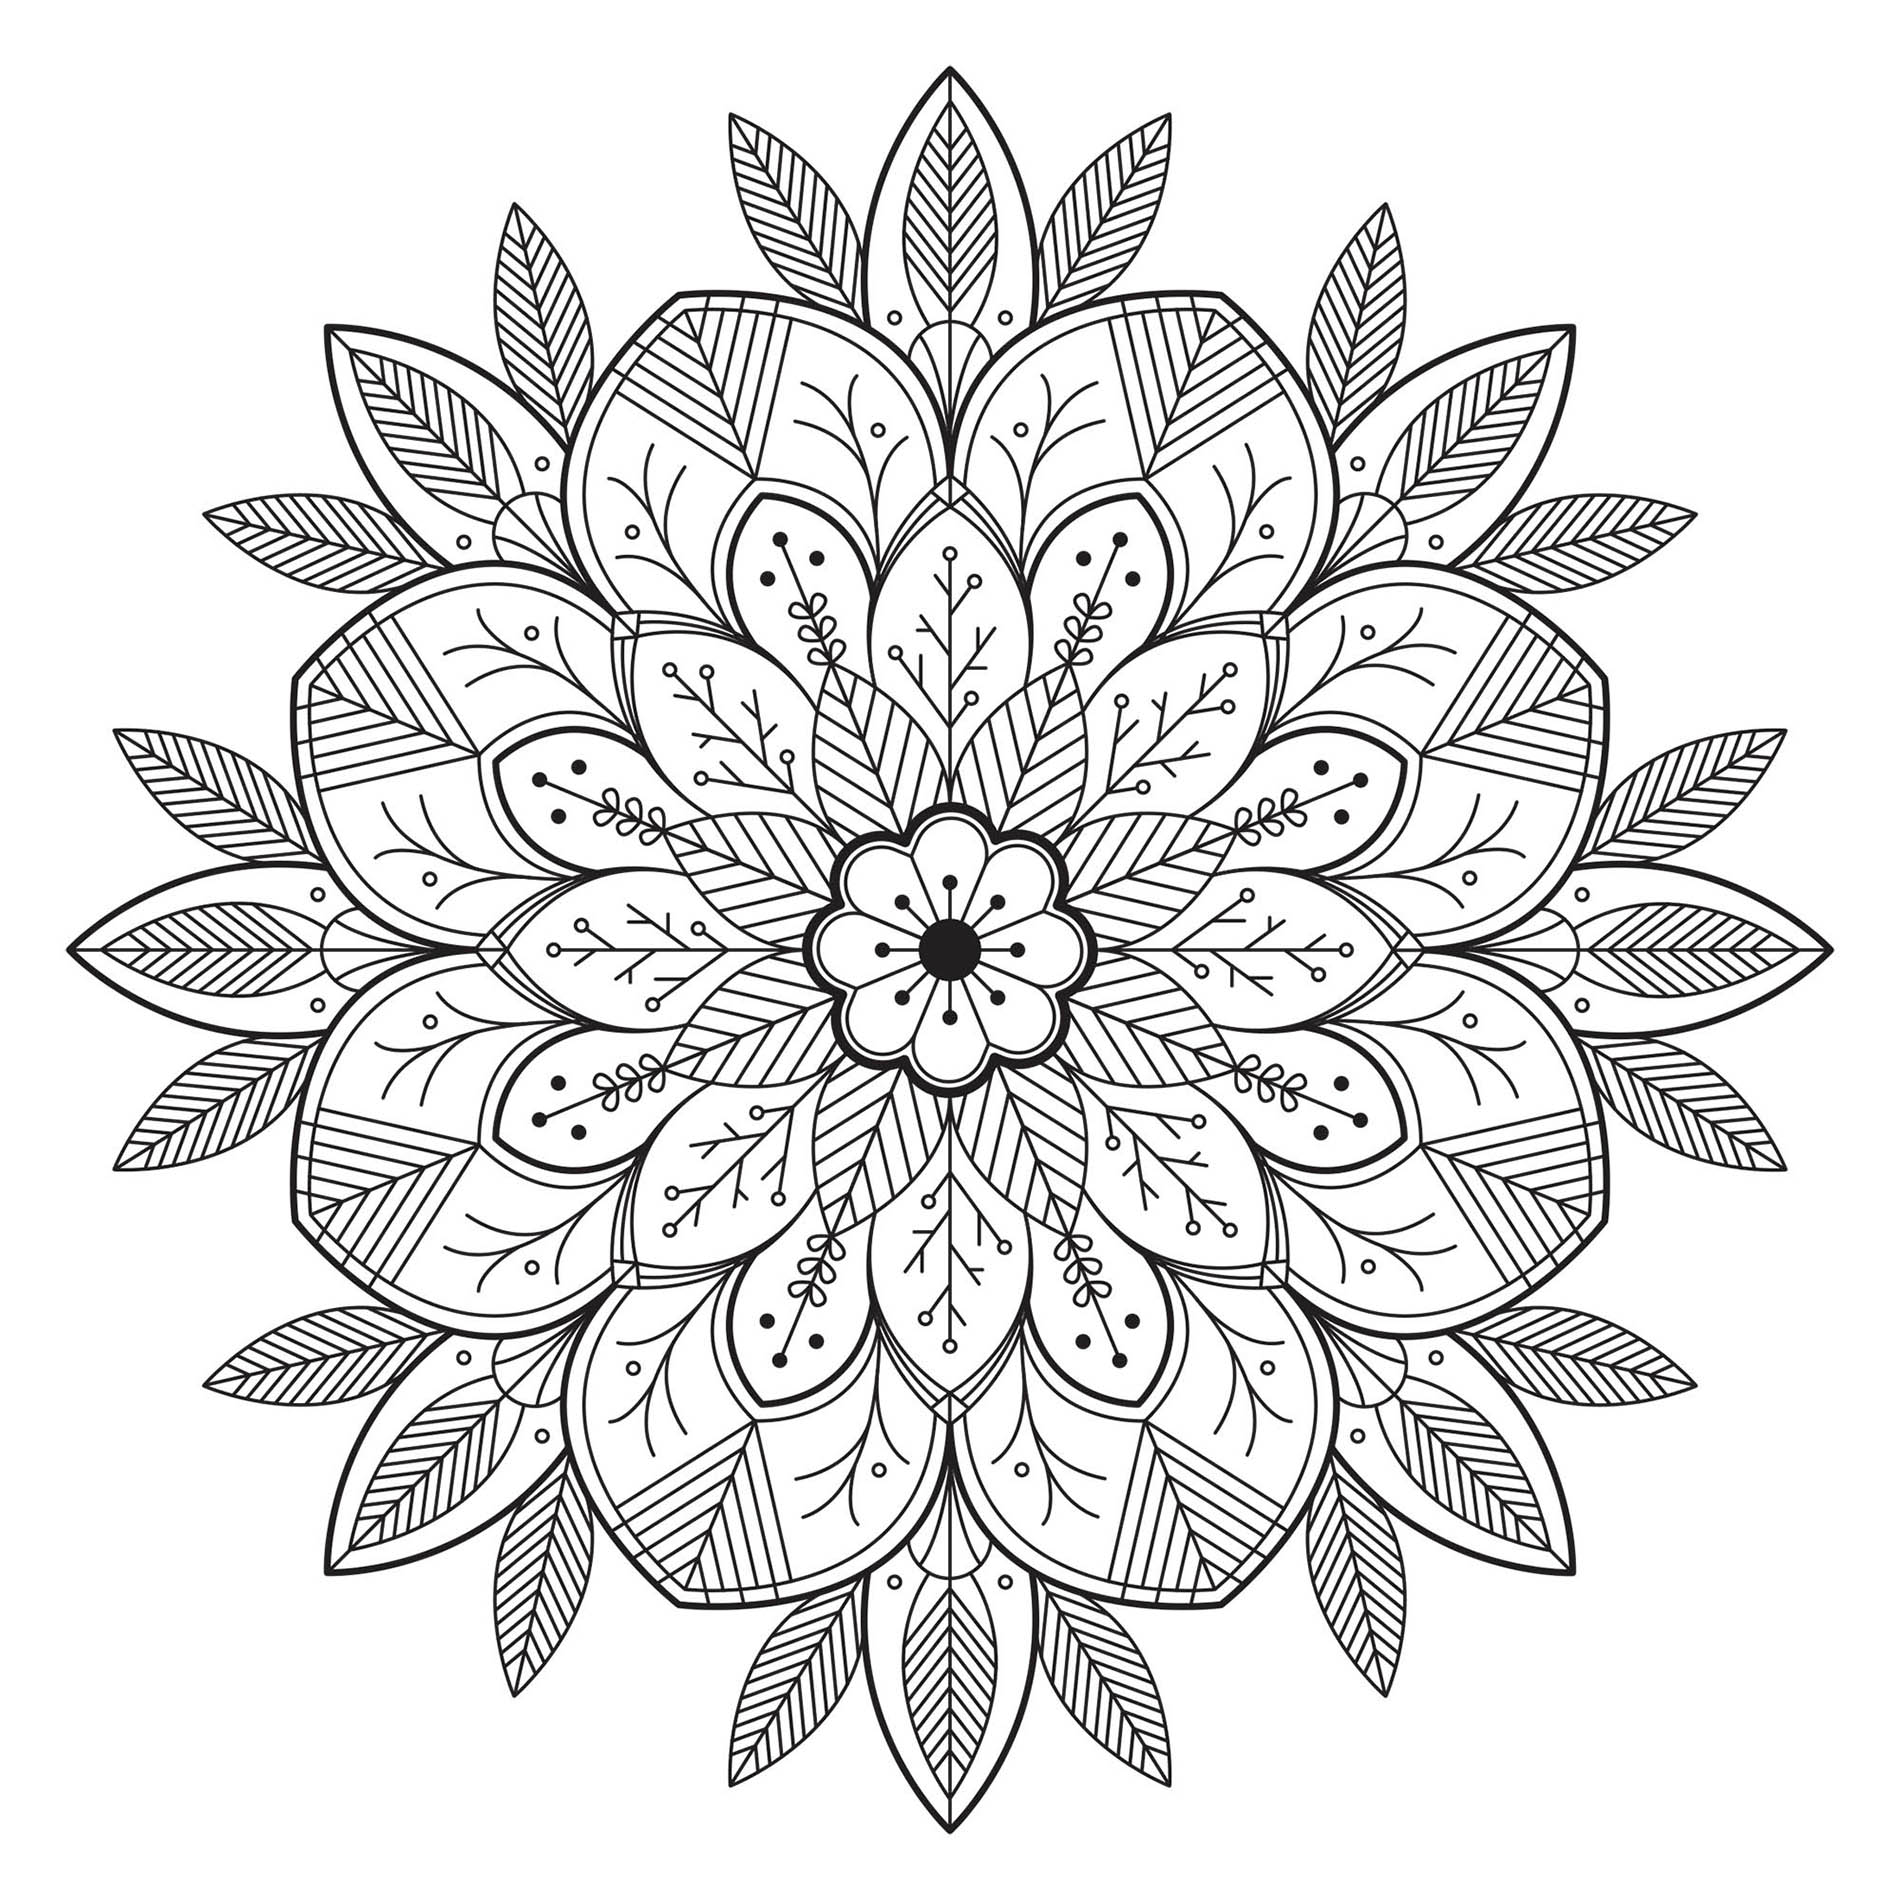 Mandala mit sehr realistischen Blumen und Blättern. Integrieren Sie die Farben, die Sie bevorzugen! Dies ist laut unseren Zählern eines der beliebtesten Mandalas auf der Website!